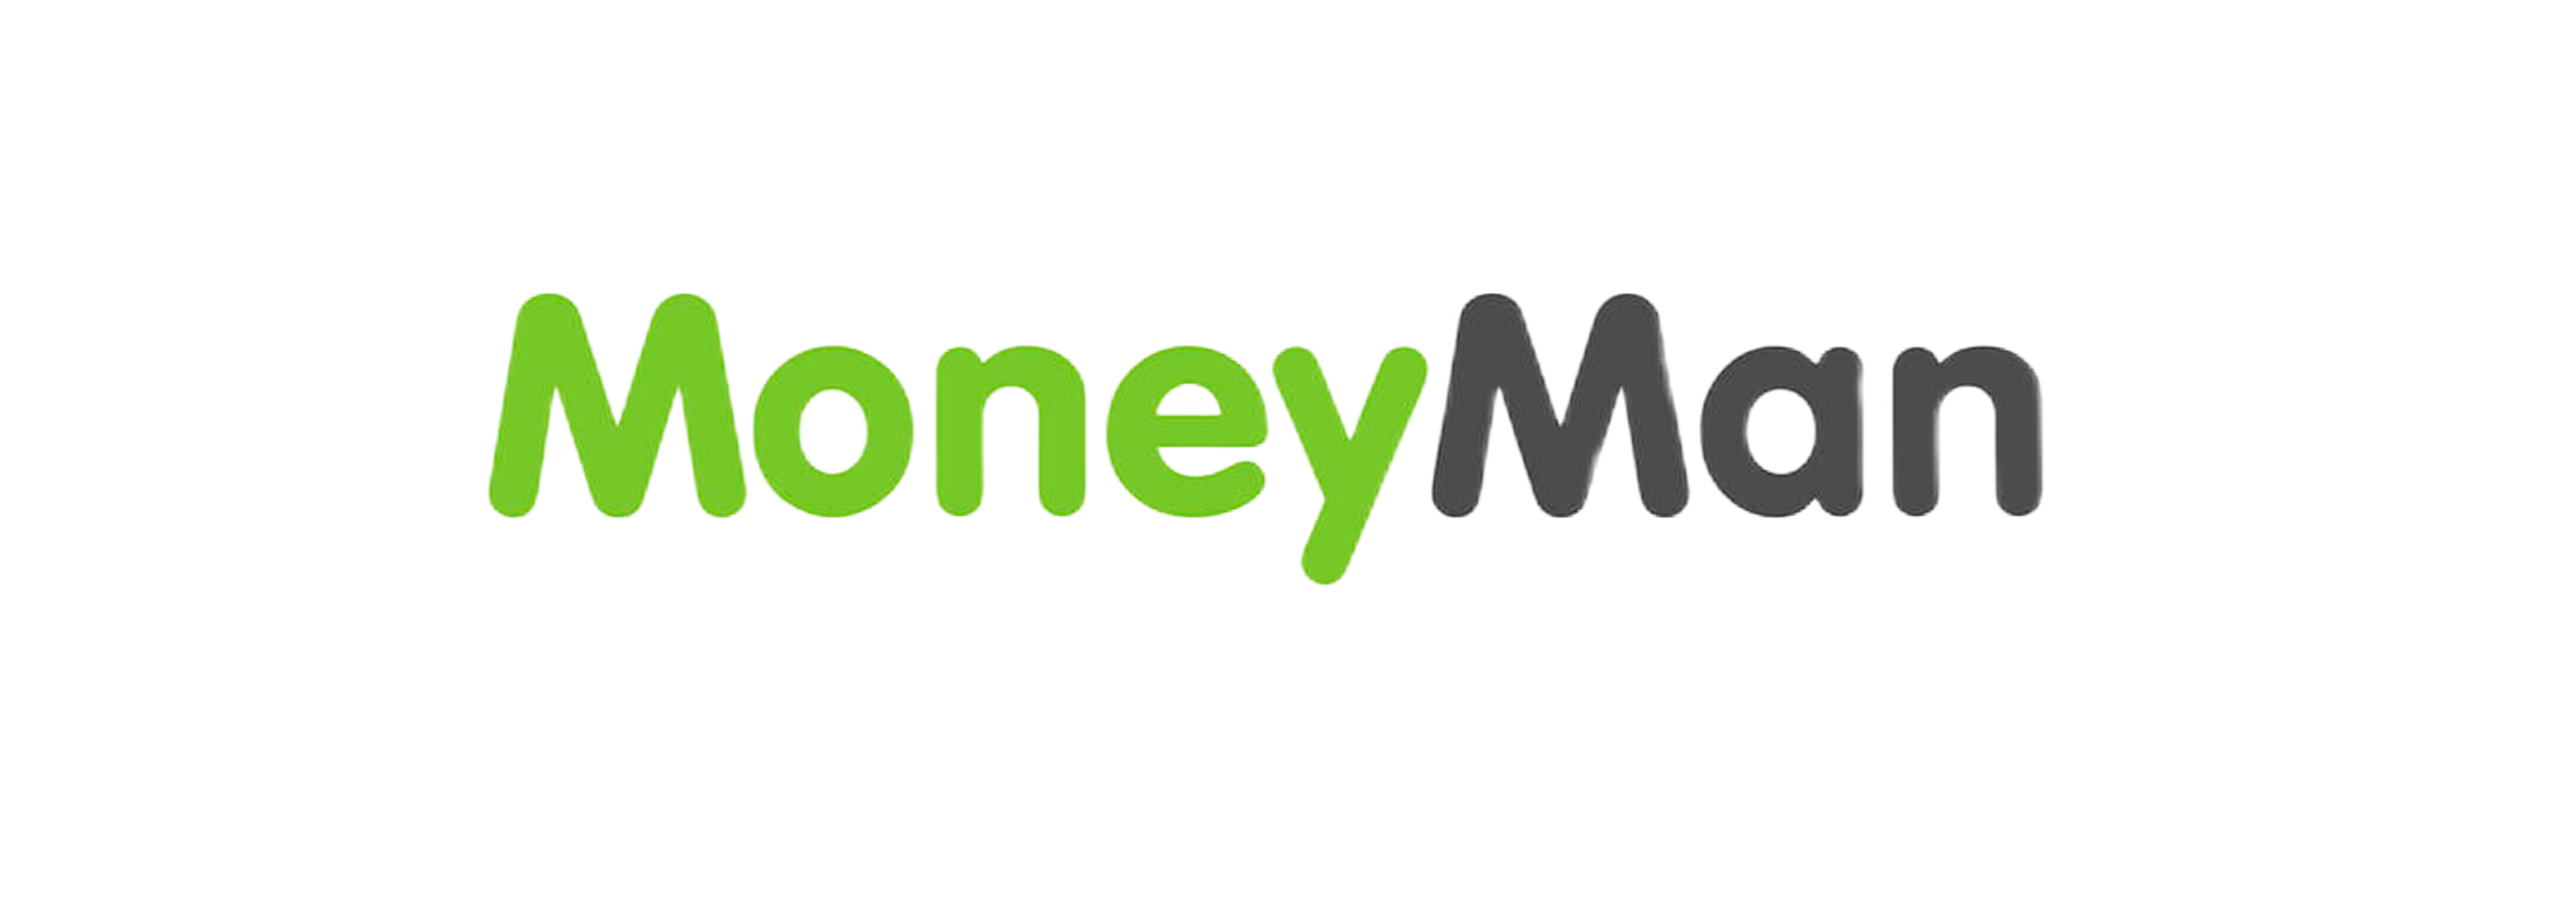 MoneyMan